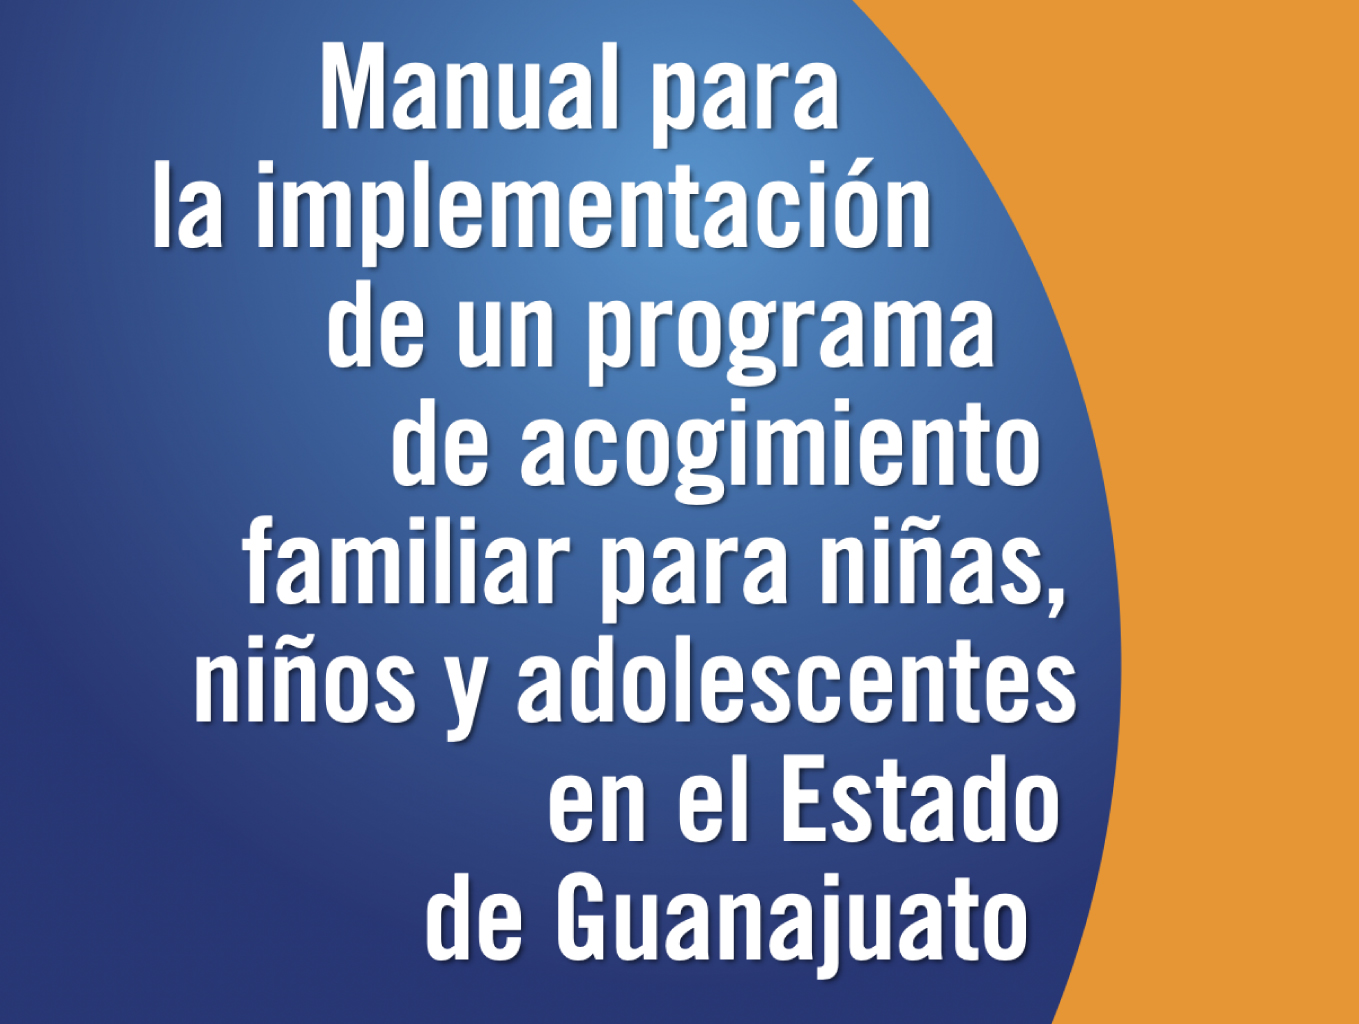 Manual para la implementación de un programa de acogimiento familiar para niñas, niños y adolescentes en el Estado de Guanajuato